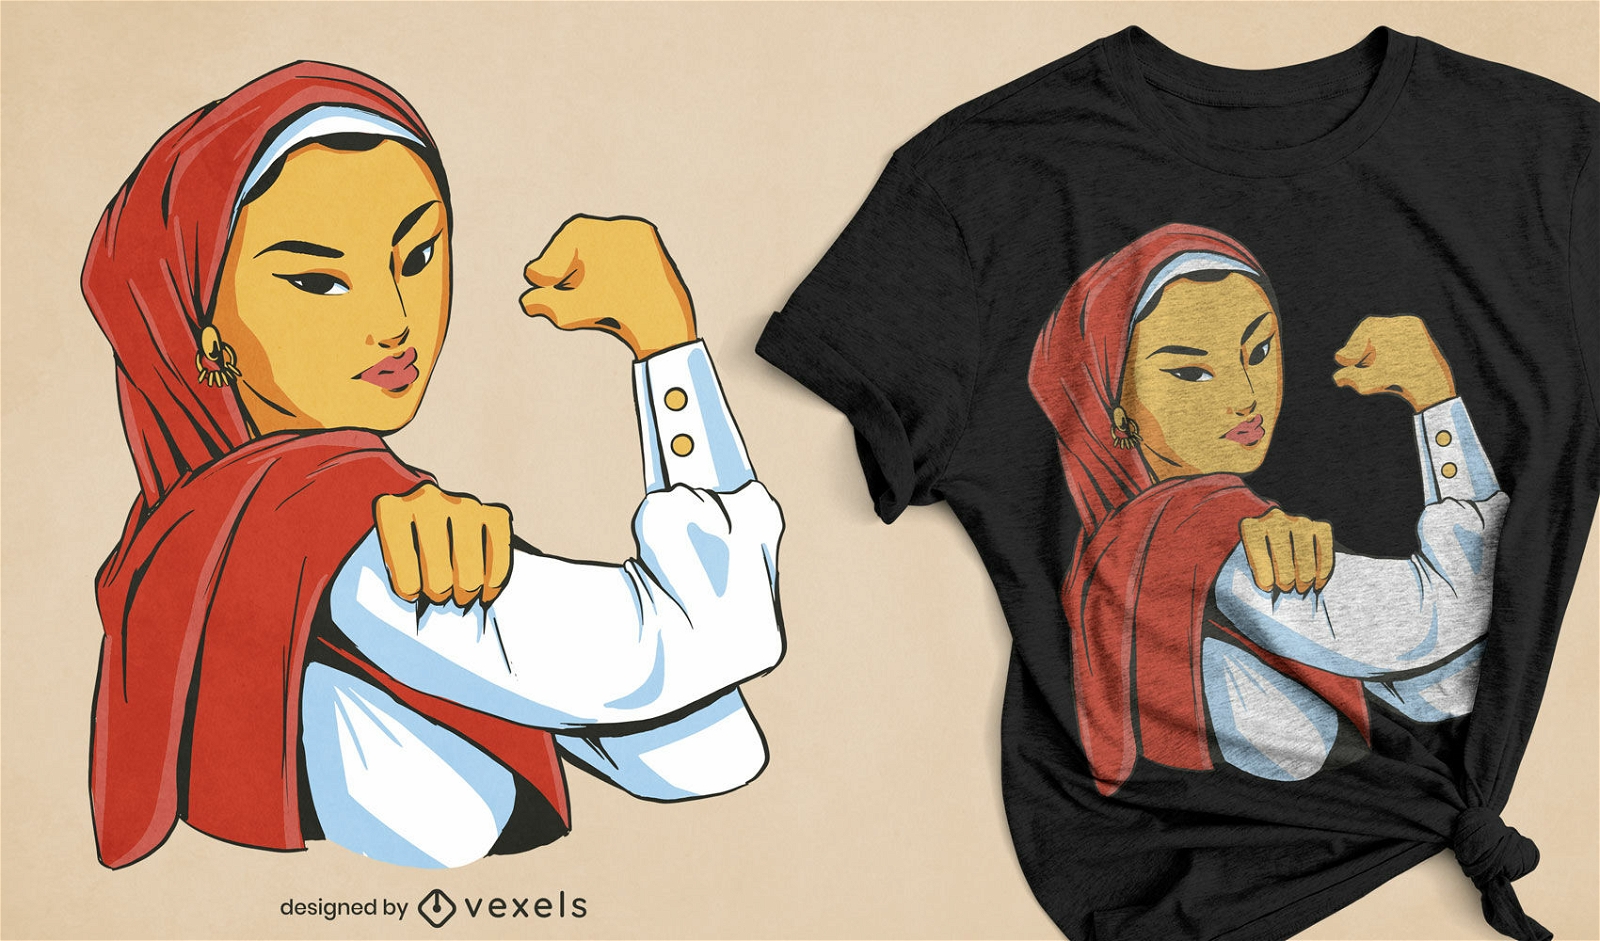 Starkes feministisches T-Shirt-Design für muslimische Frauen